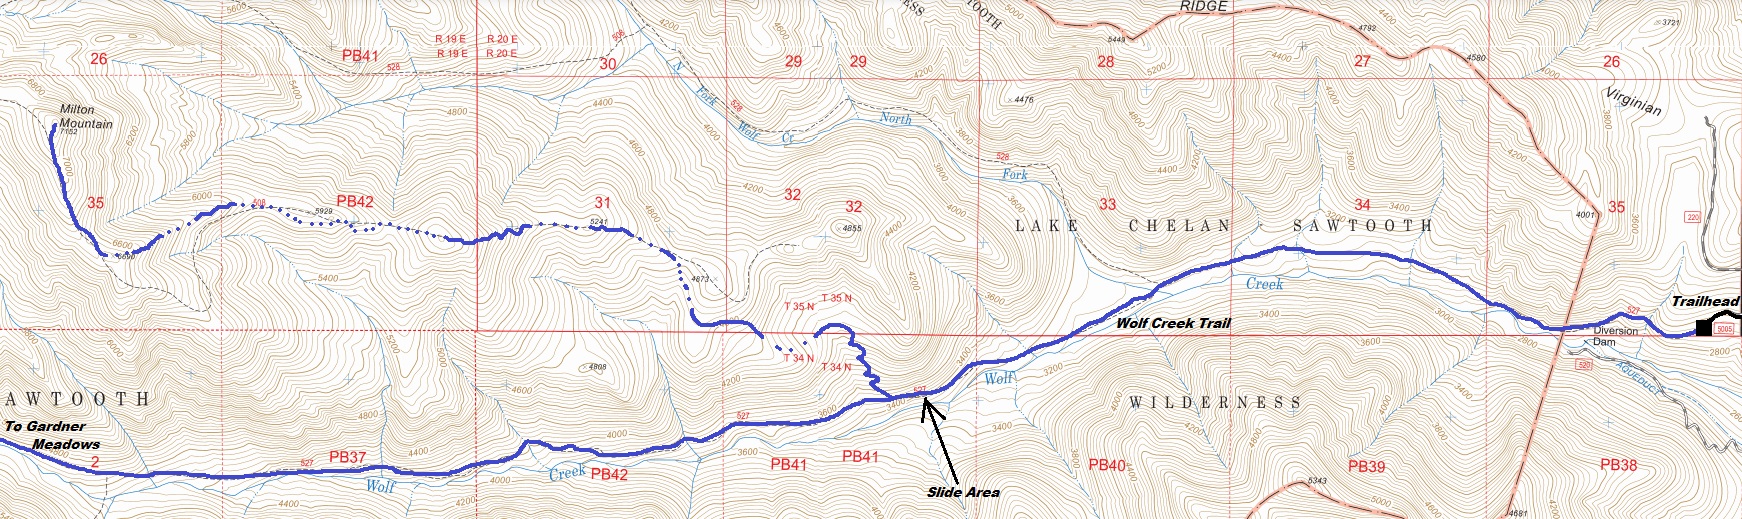 milton mountain map